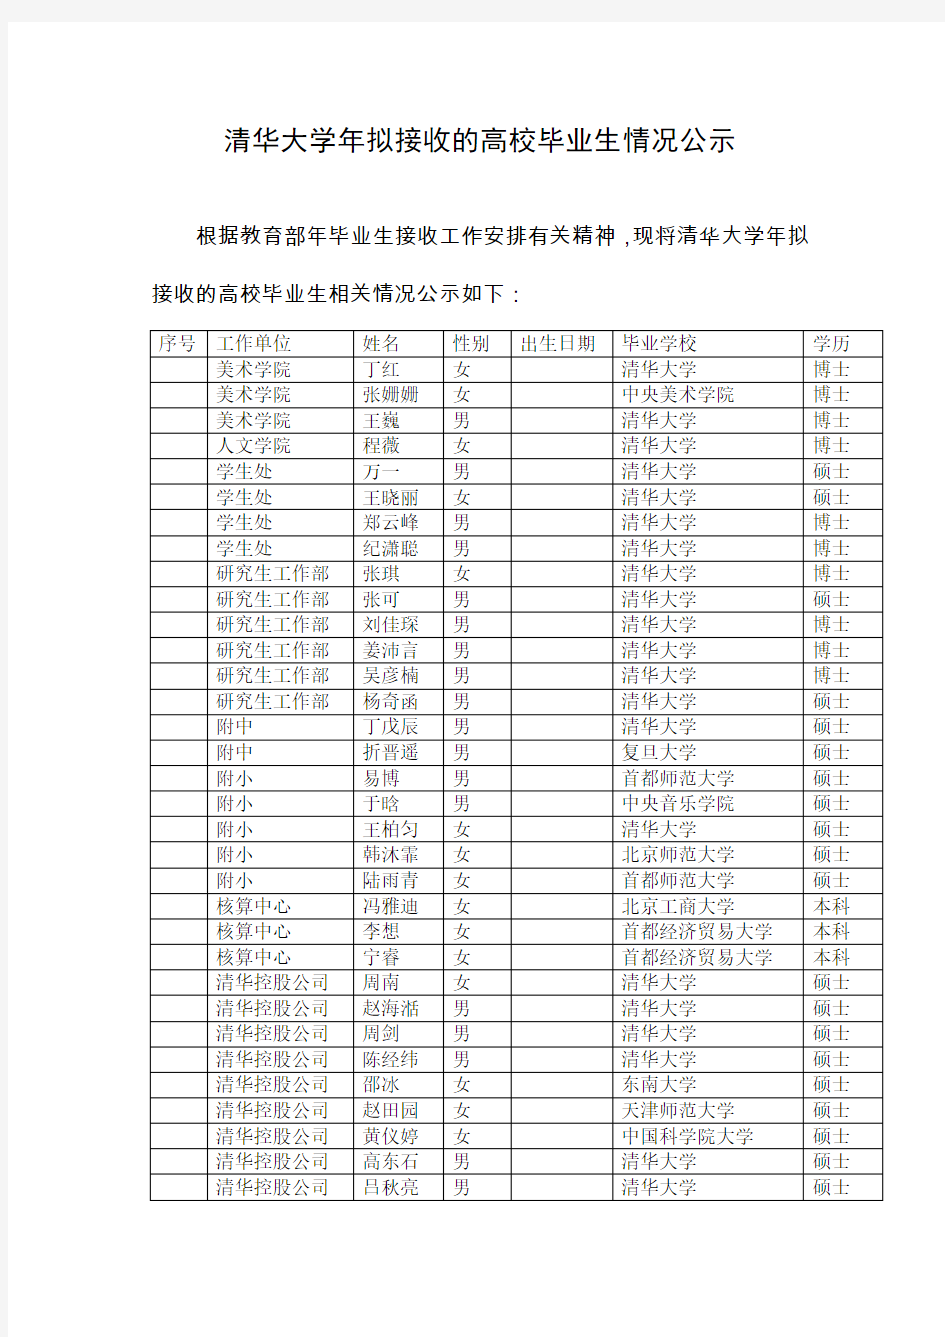 清华大学2015年拟接收的高校毕业生情况公示